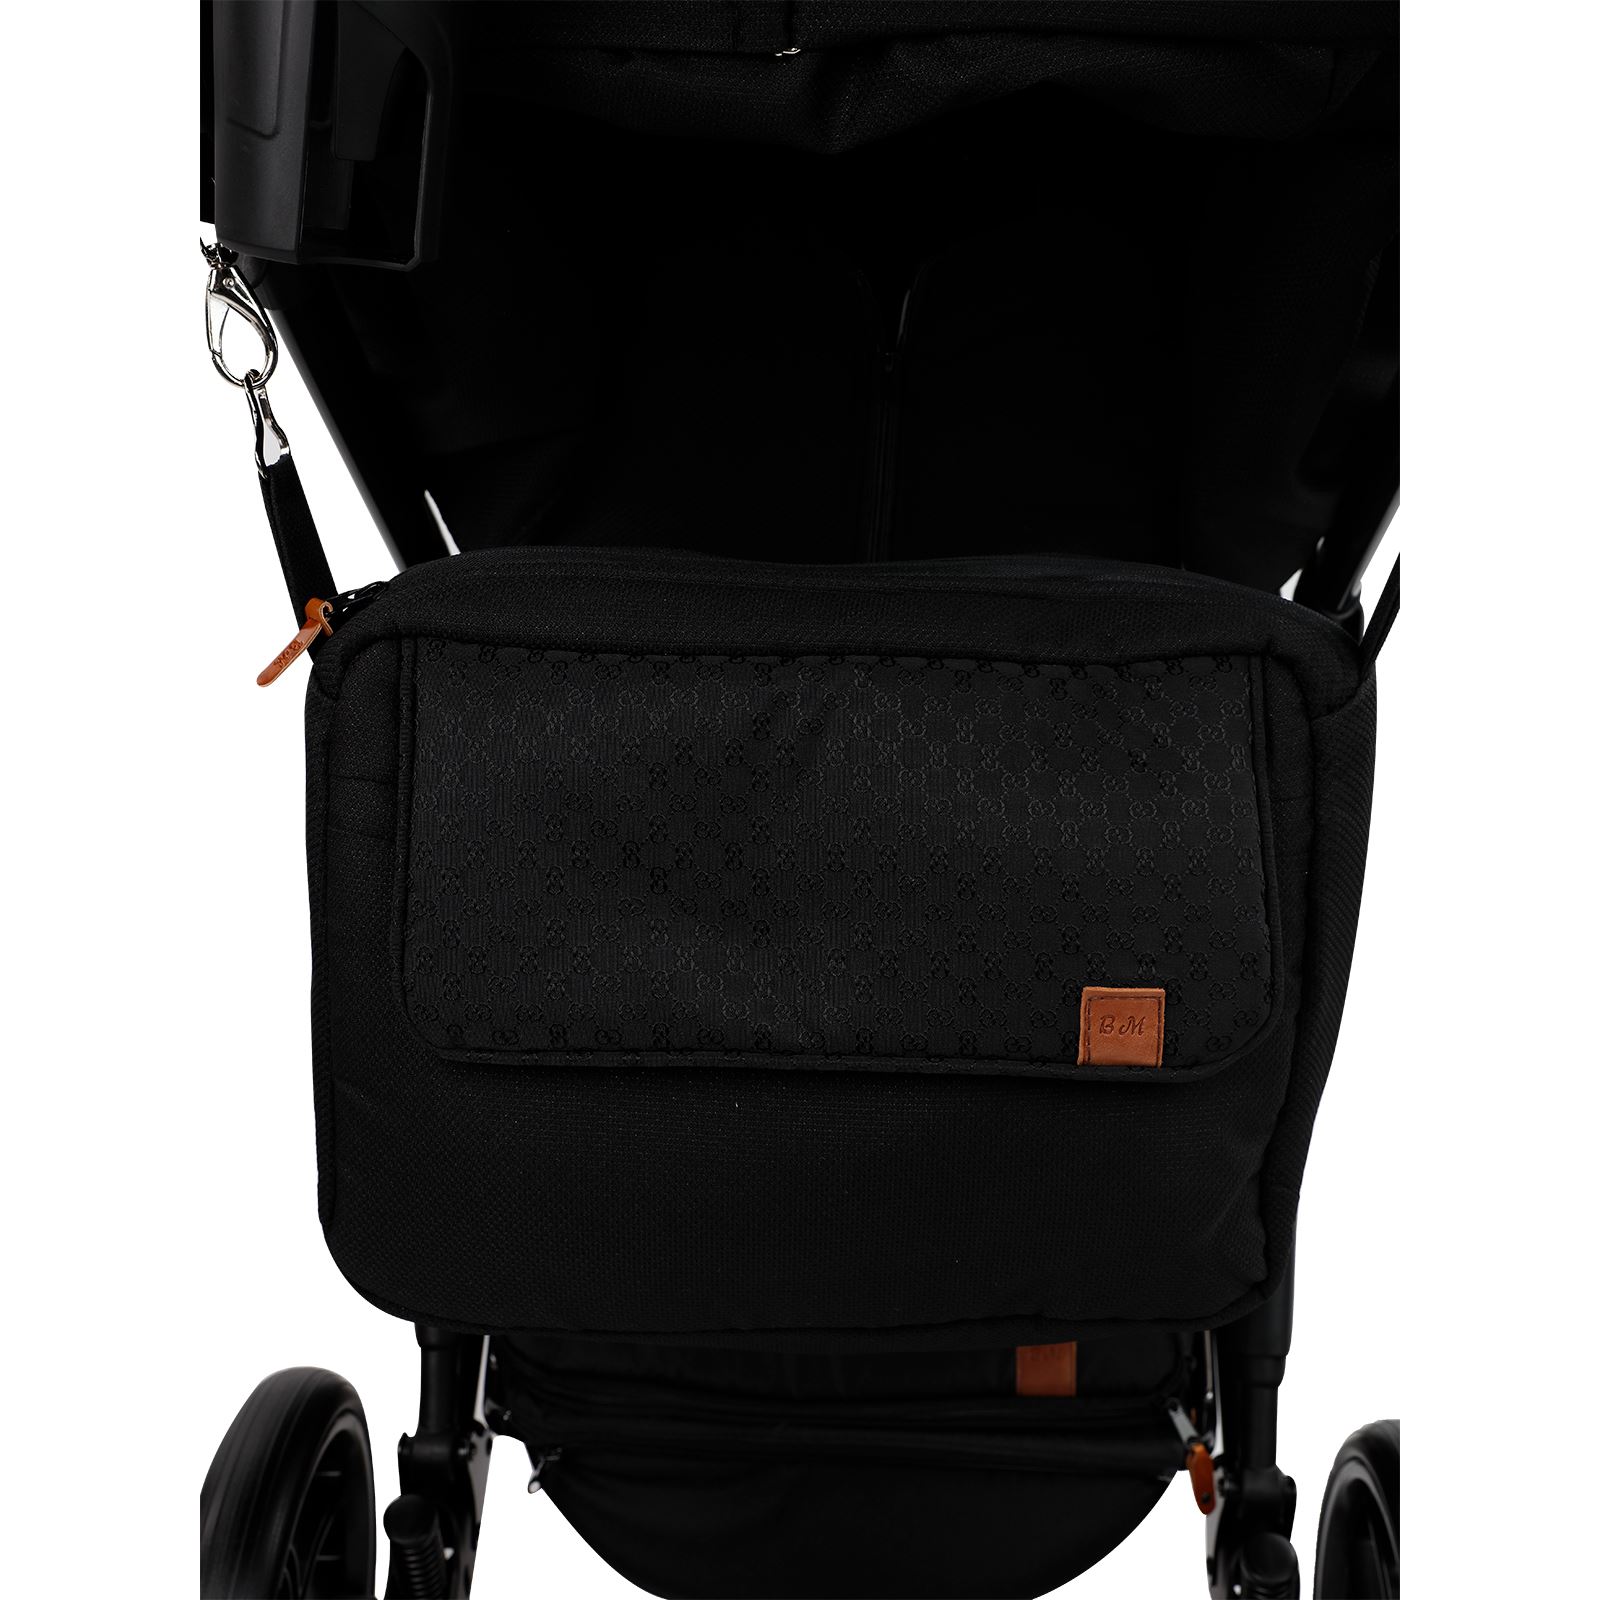 Baby Merc Travel sistem Bebek Arabası La Rosa Black Çanta Hediyeli!